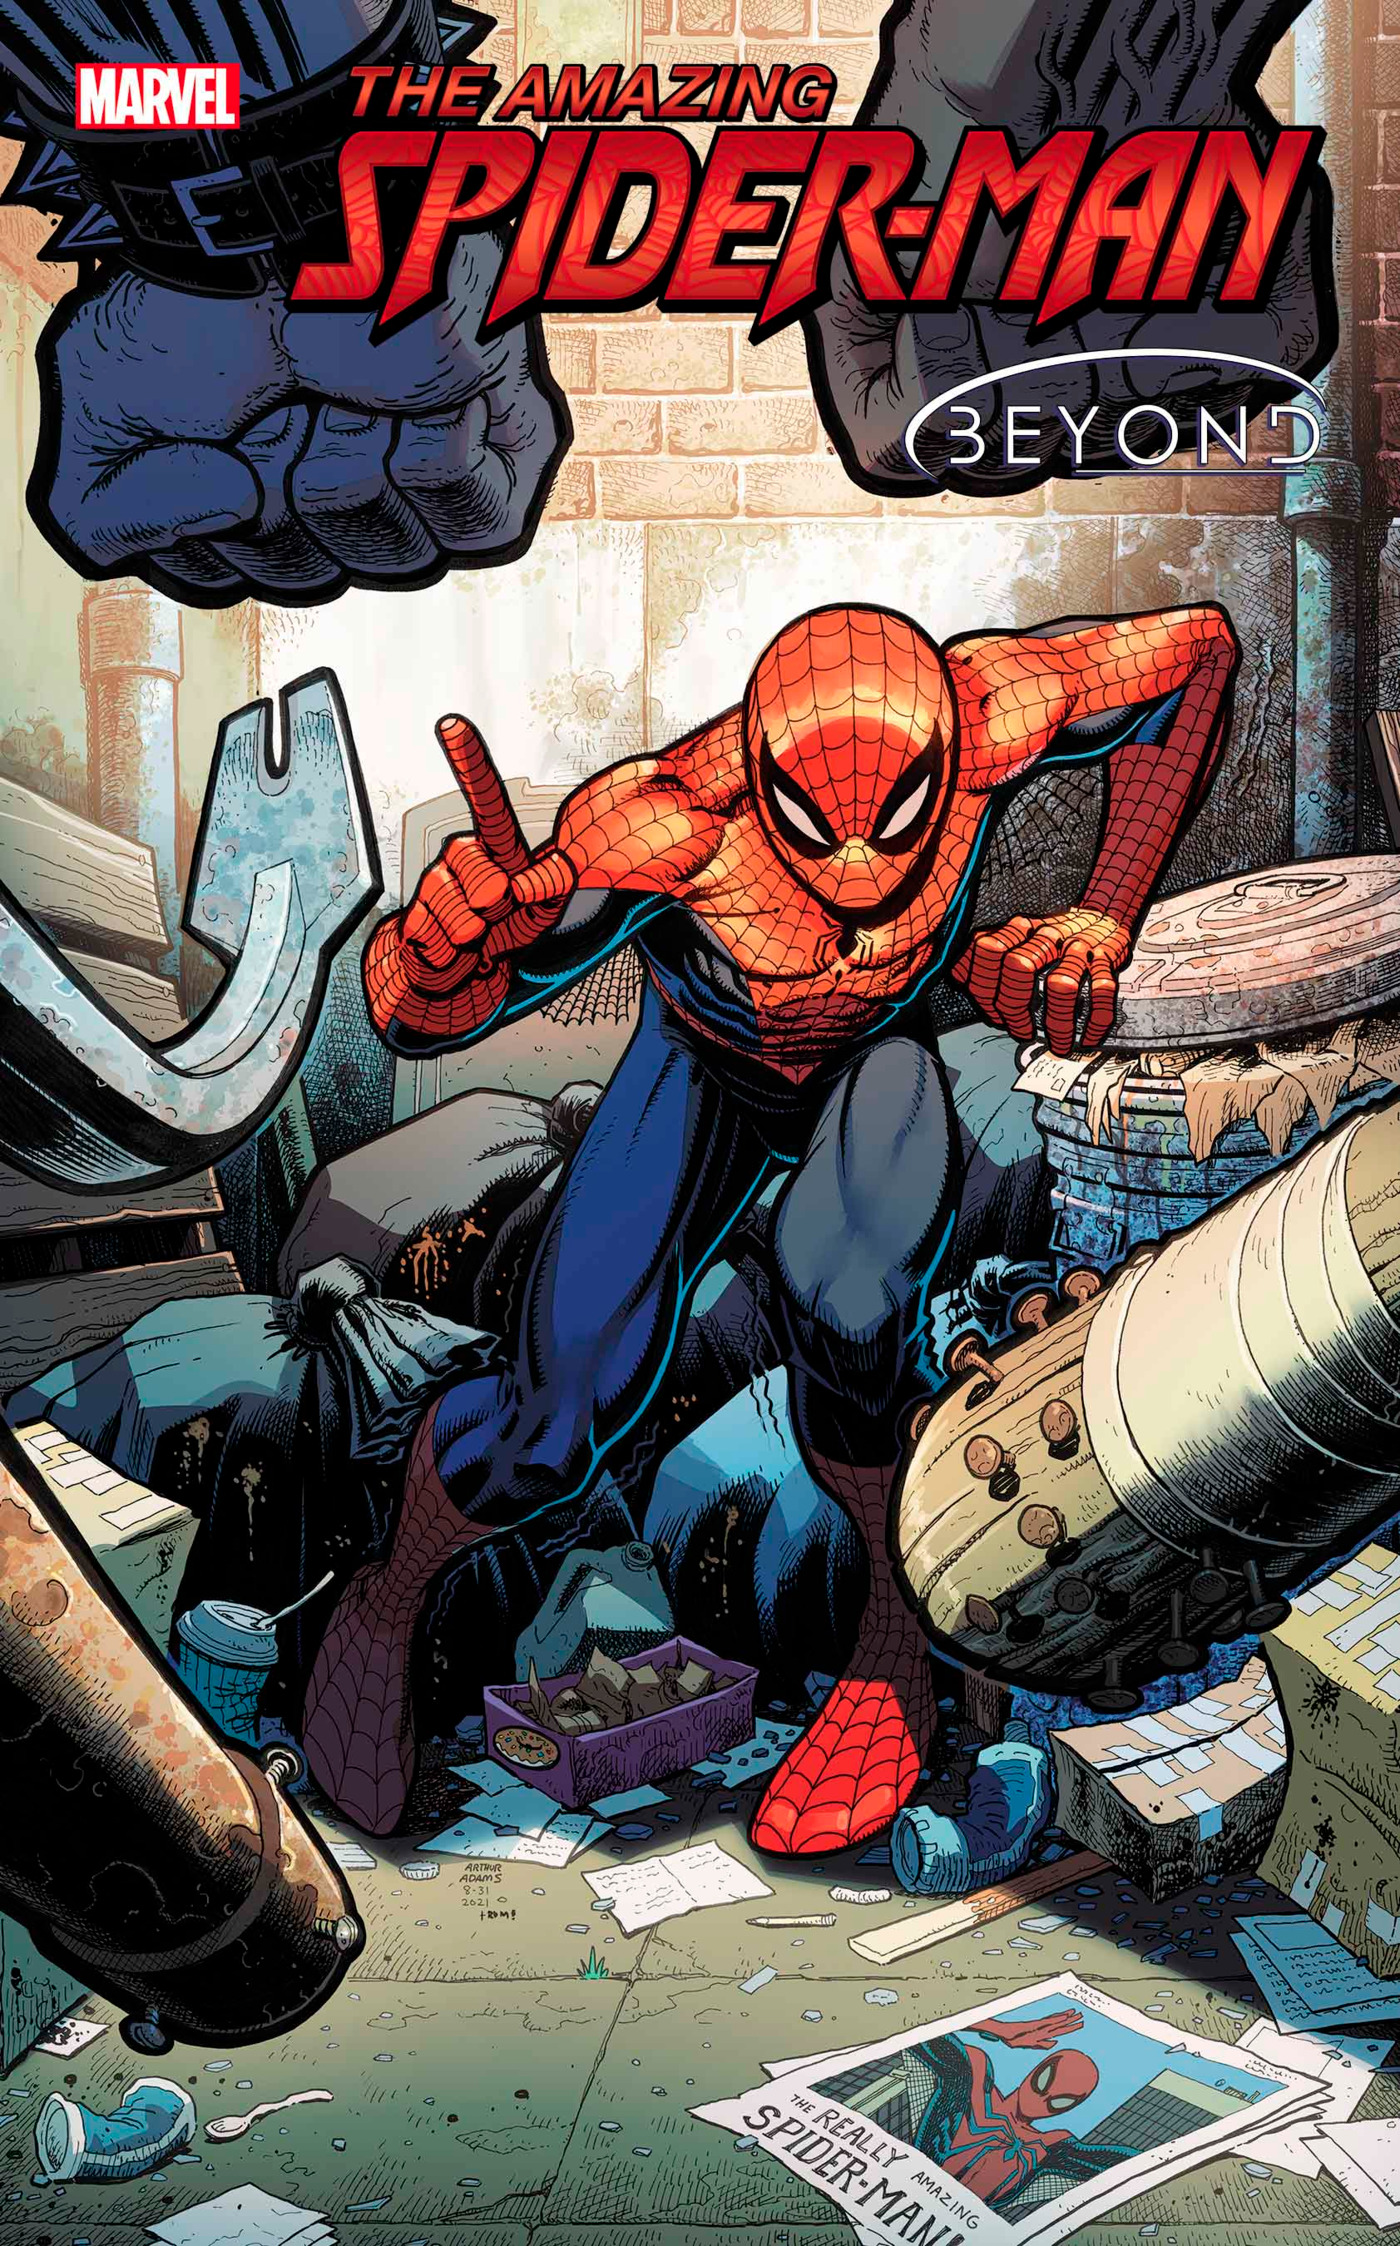 Amazing Spider-Man #83 Beyond (2018)